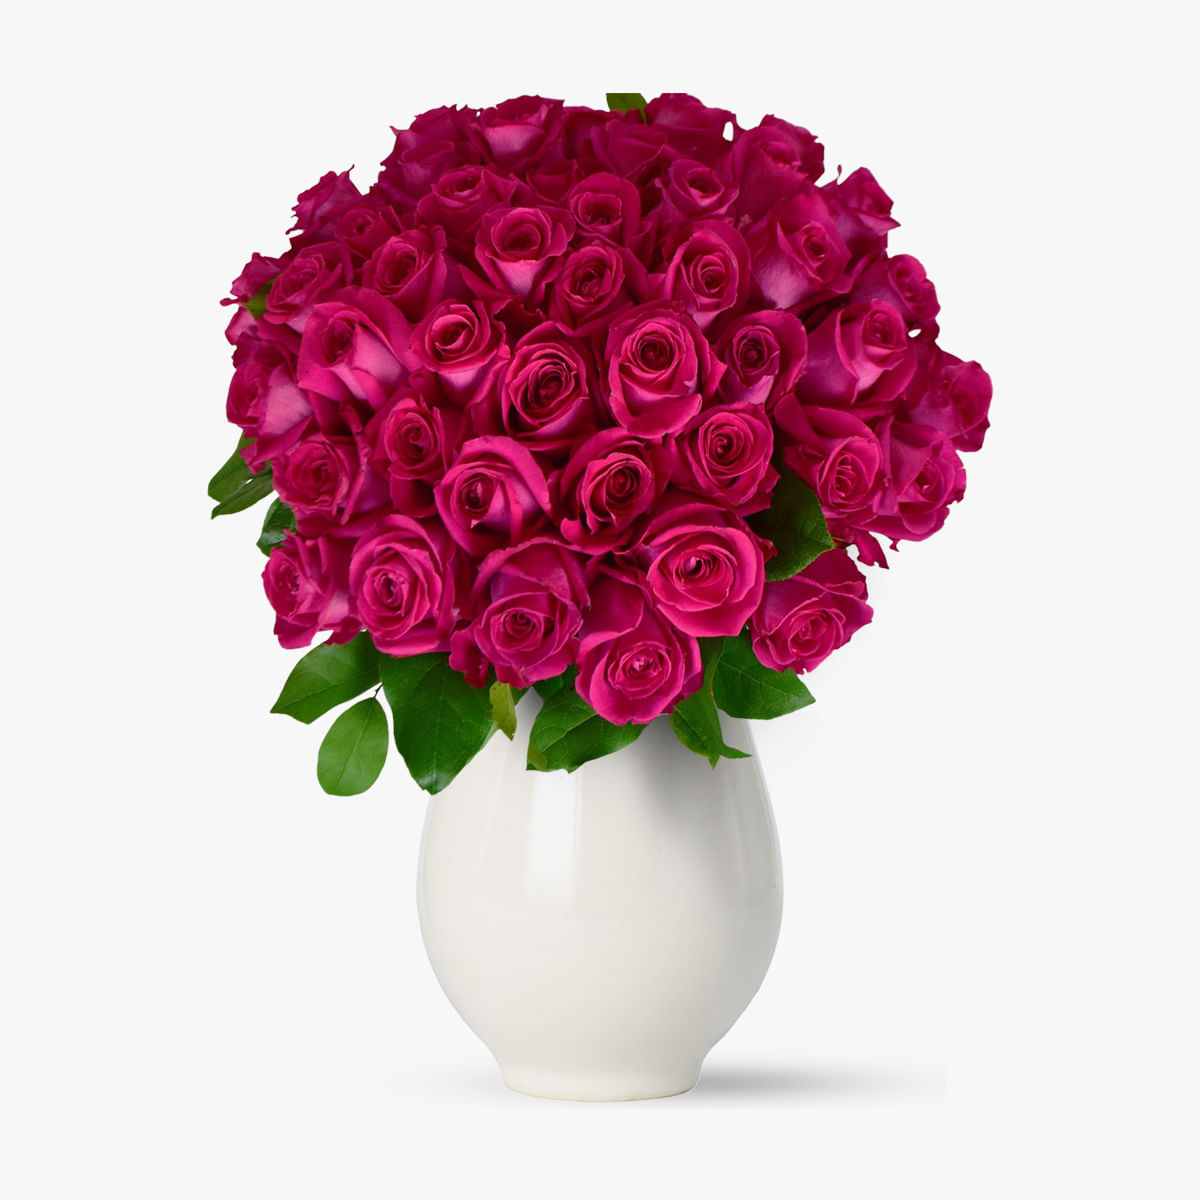 Buchet de 55 trandafiri roz Floria imagine 2022